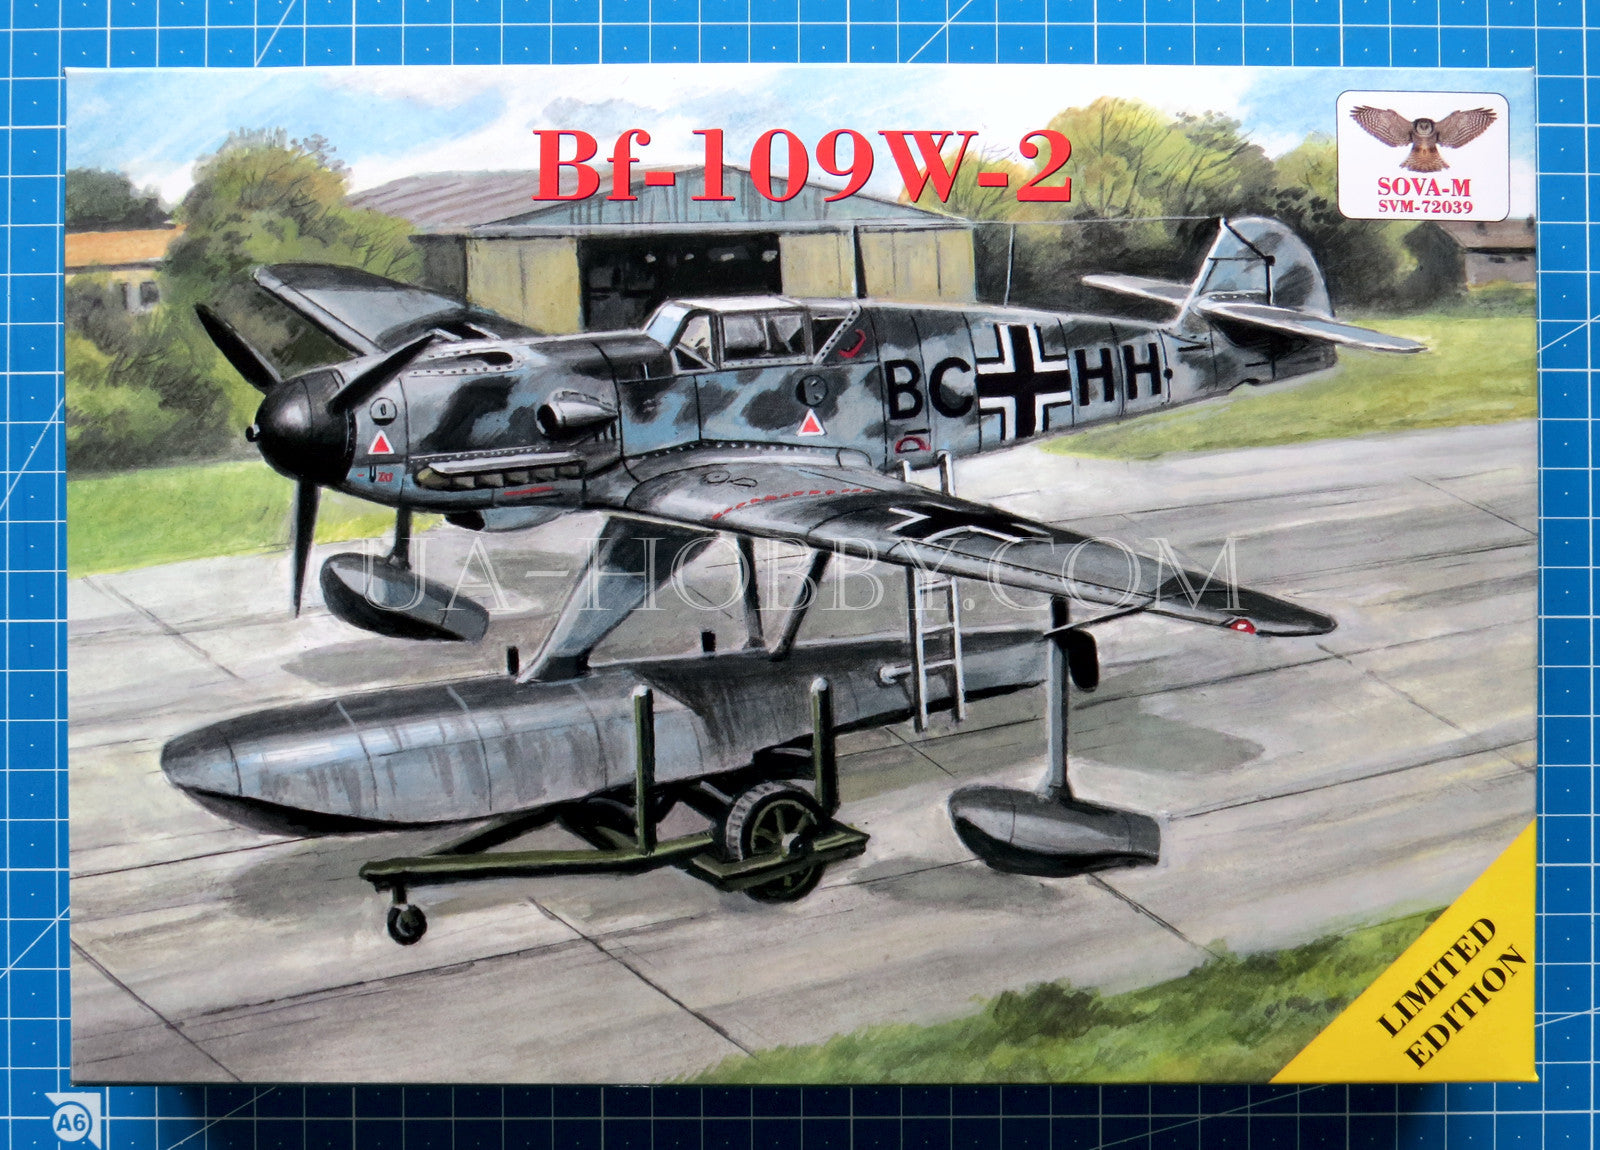 1/72 Messerschmitt Bf-109W-2. SOVA-M SVM-72039